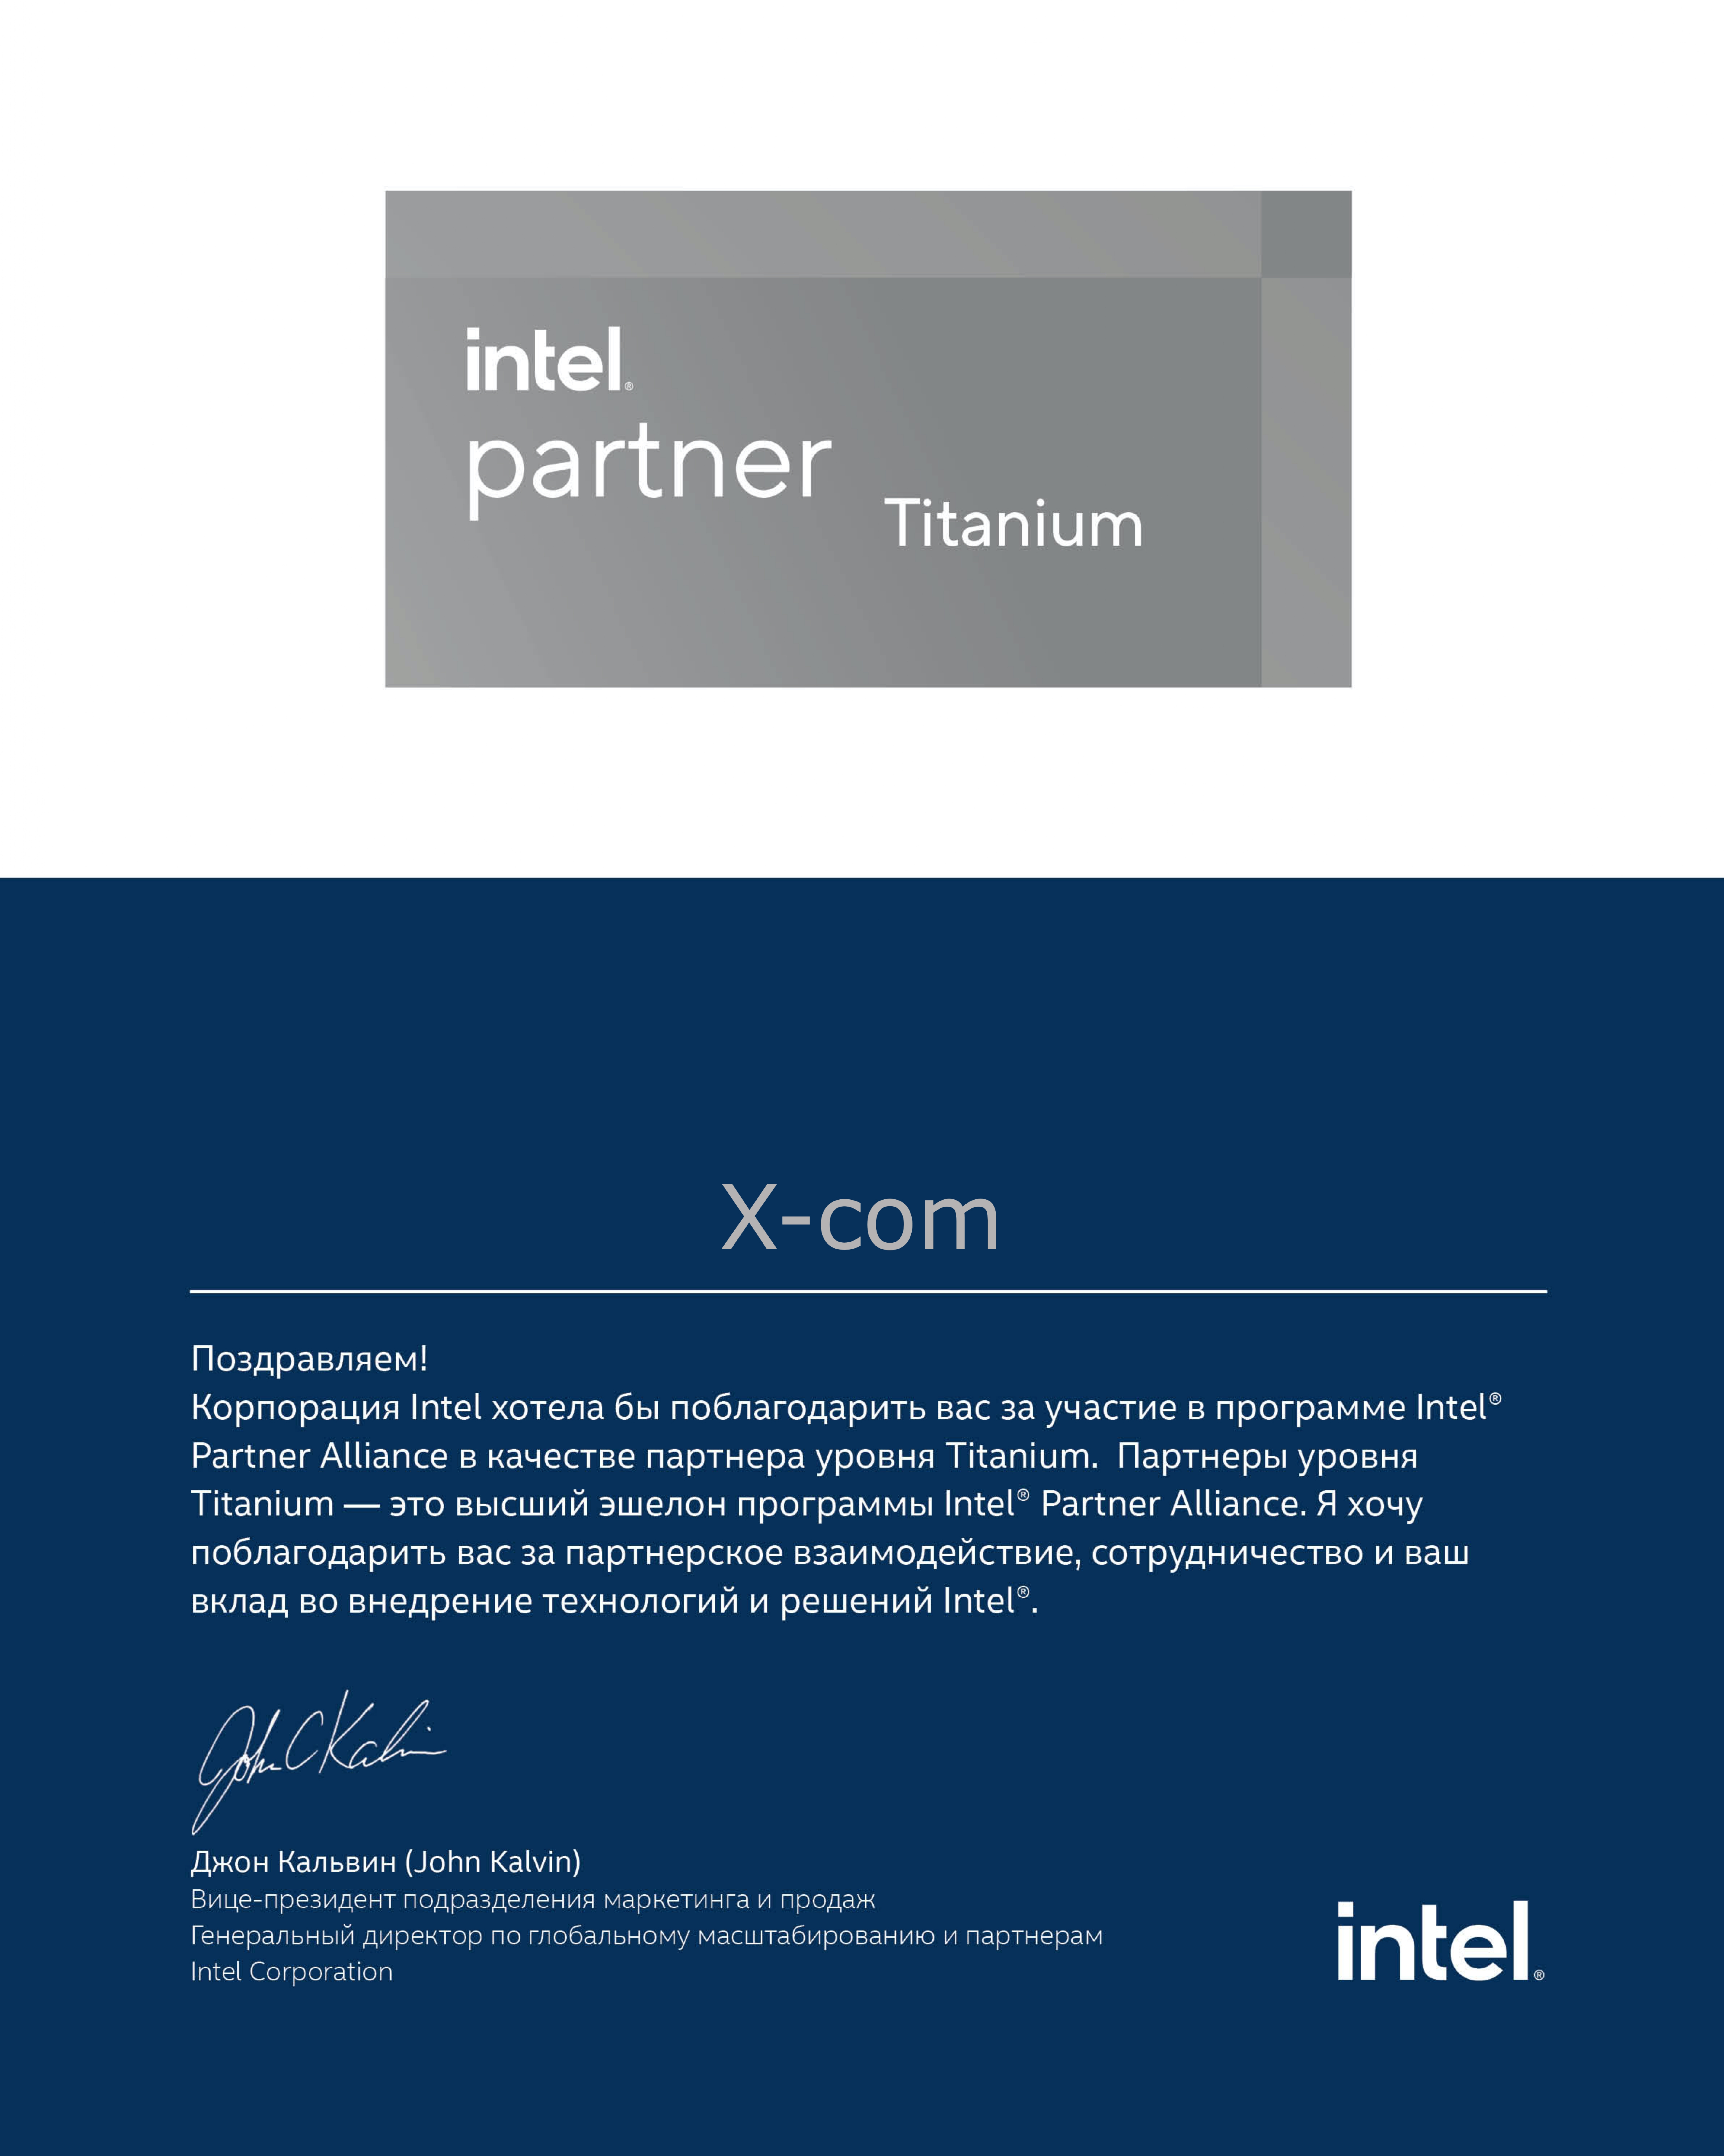 X-Com подтвердила высший партнерский статус Intel